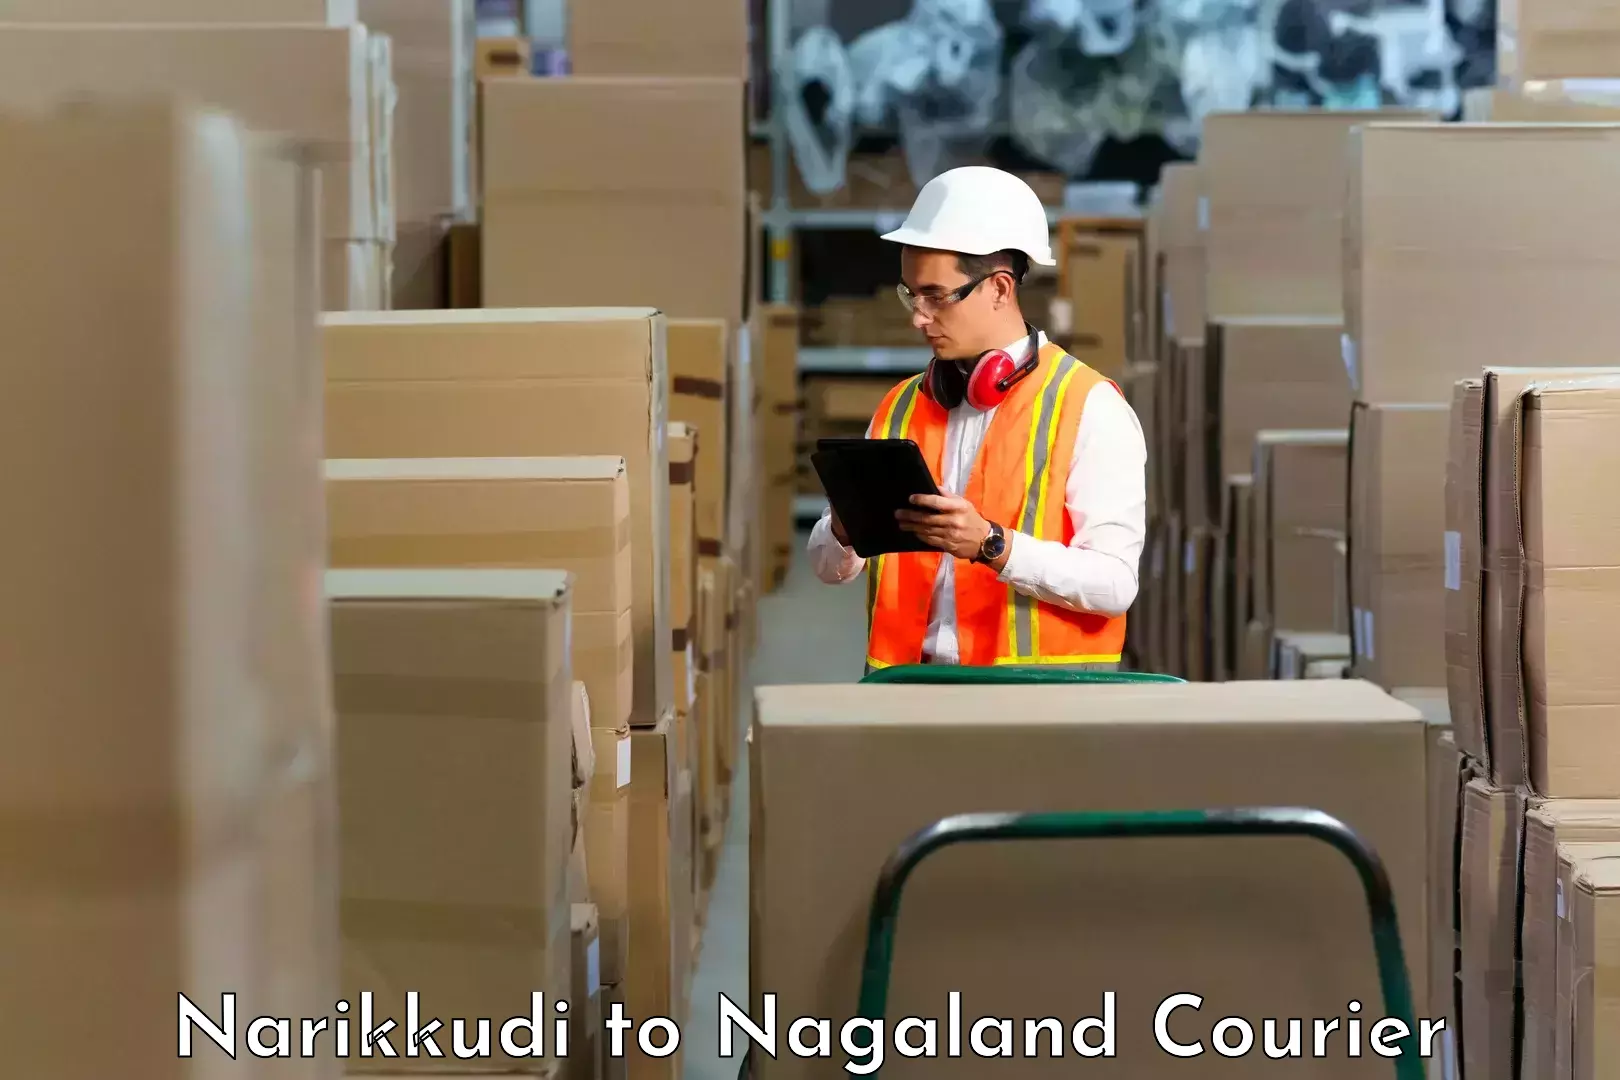 Express package handling Narikkudi to NIT Nagaland